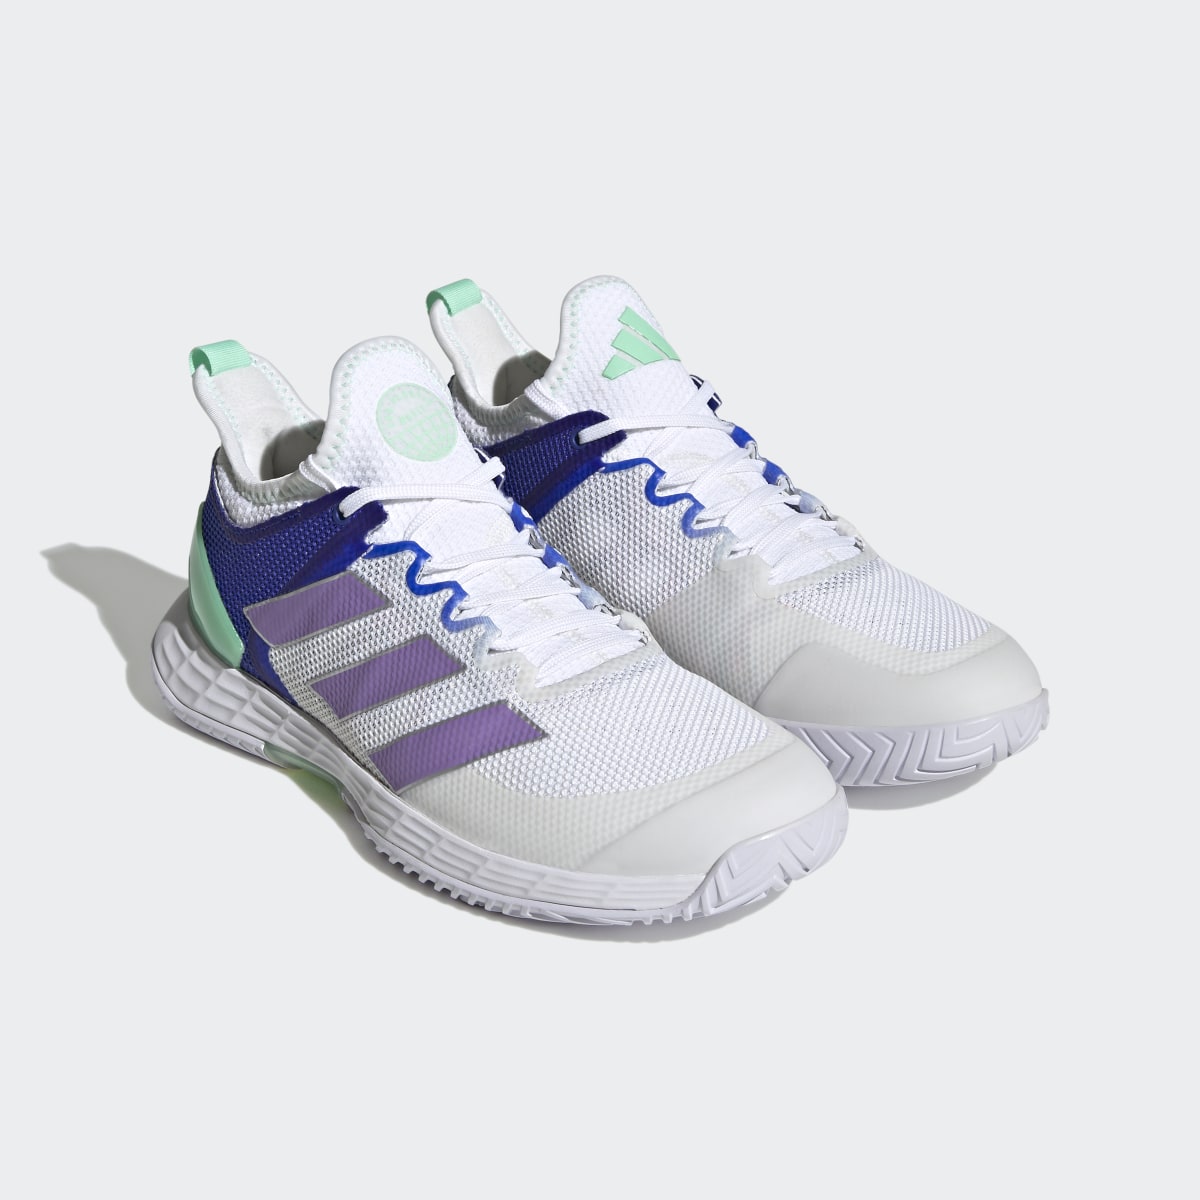 Adidas adizero Ubersonic 4 Tennis Shoes. 8